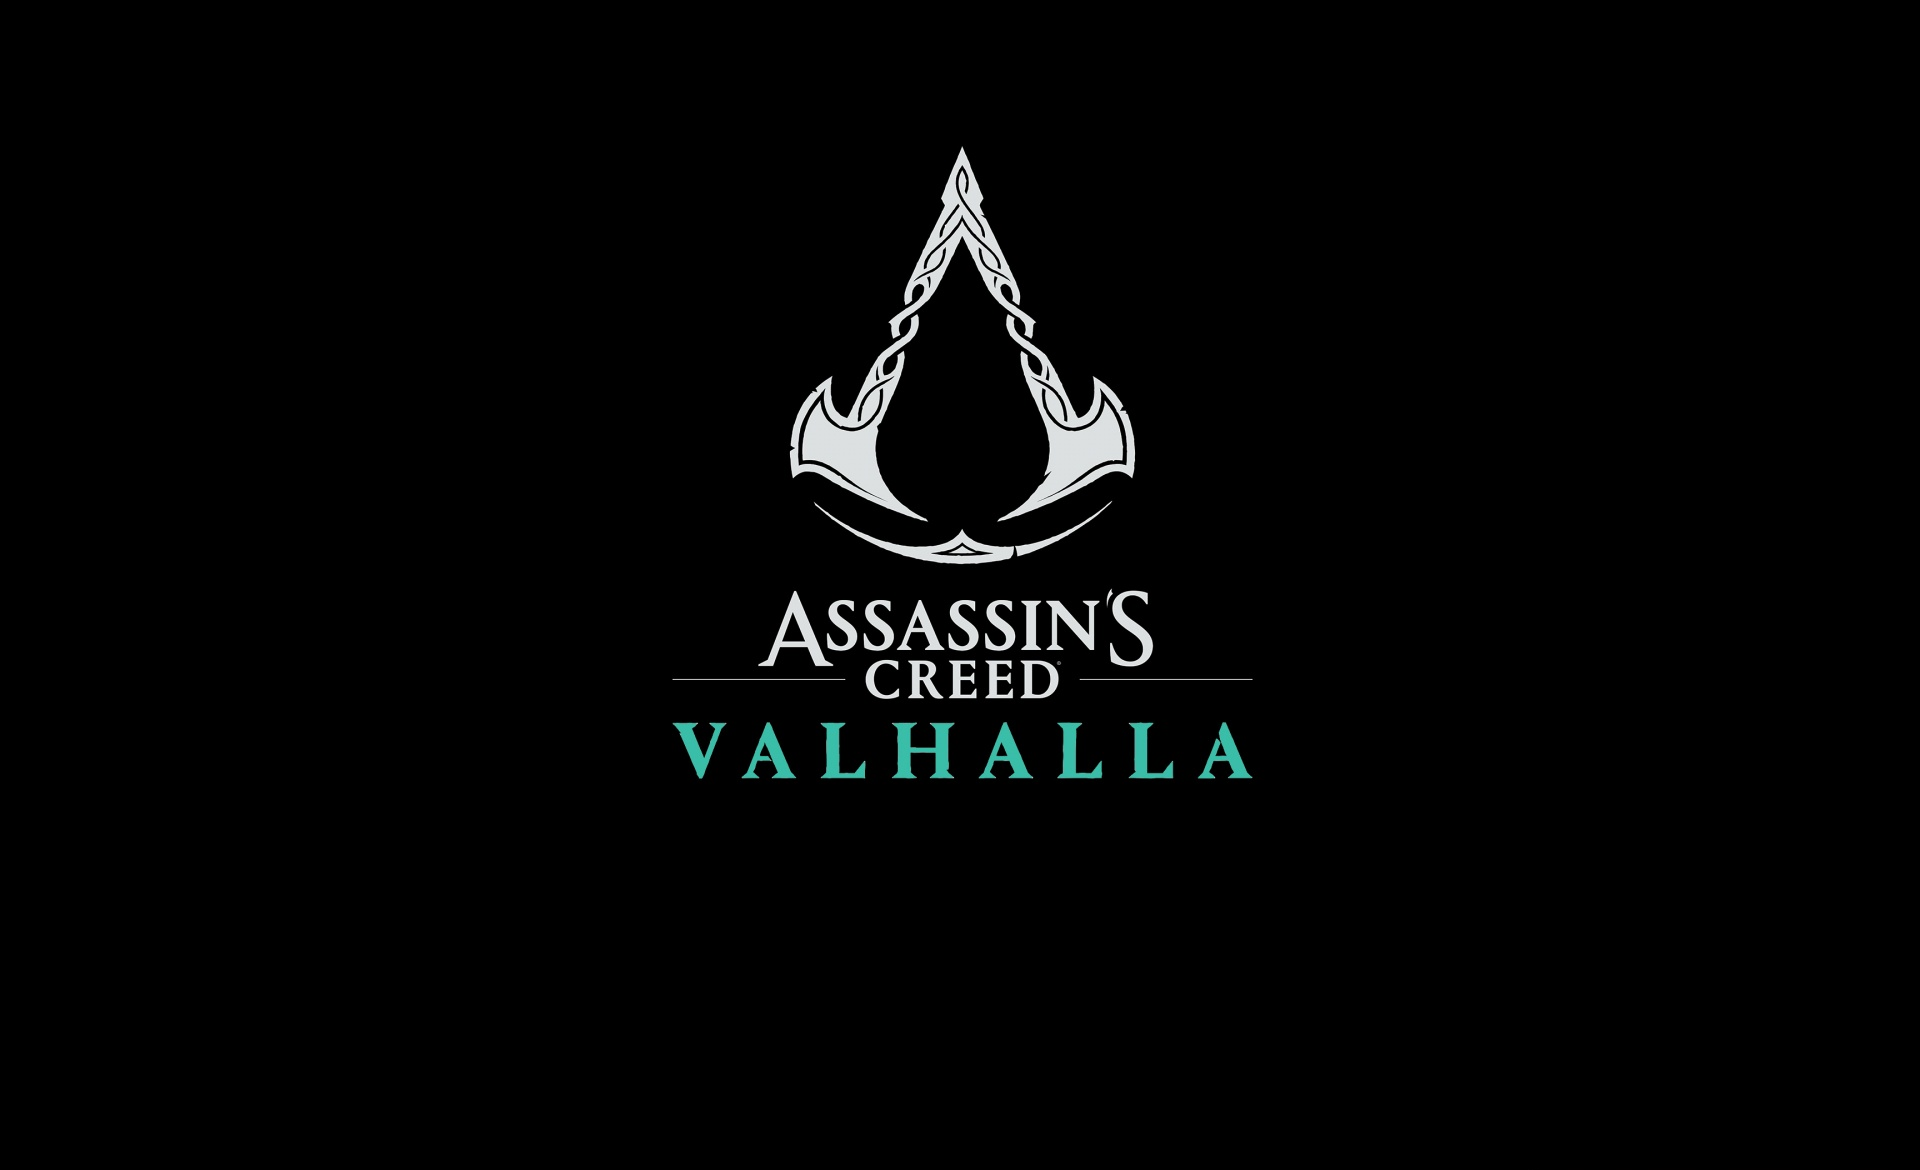 Assassin’s Creed Valhalla, İlk Haftasında Önceki Diğer Assassin's Creed Oyunlarından Daha Fazla Birim Sattı